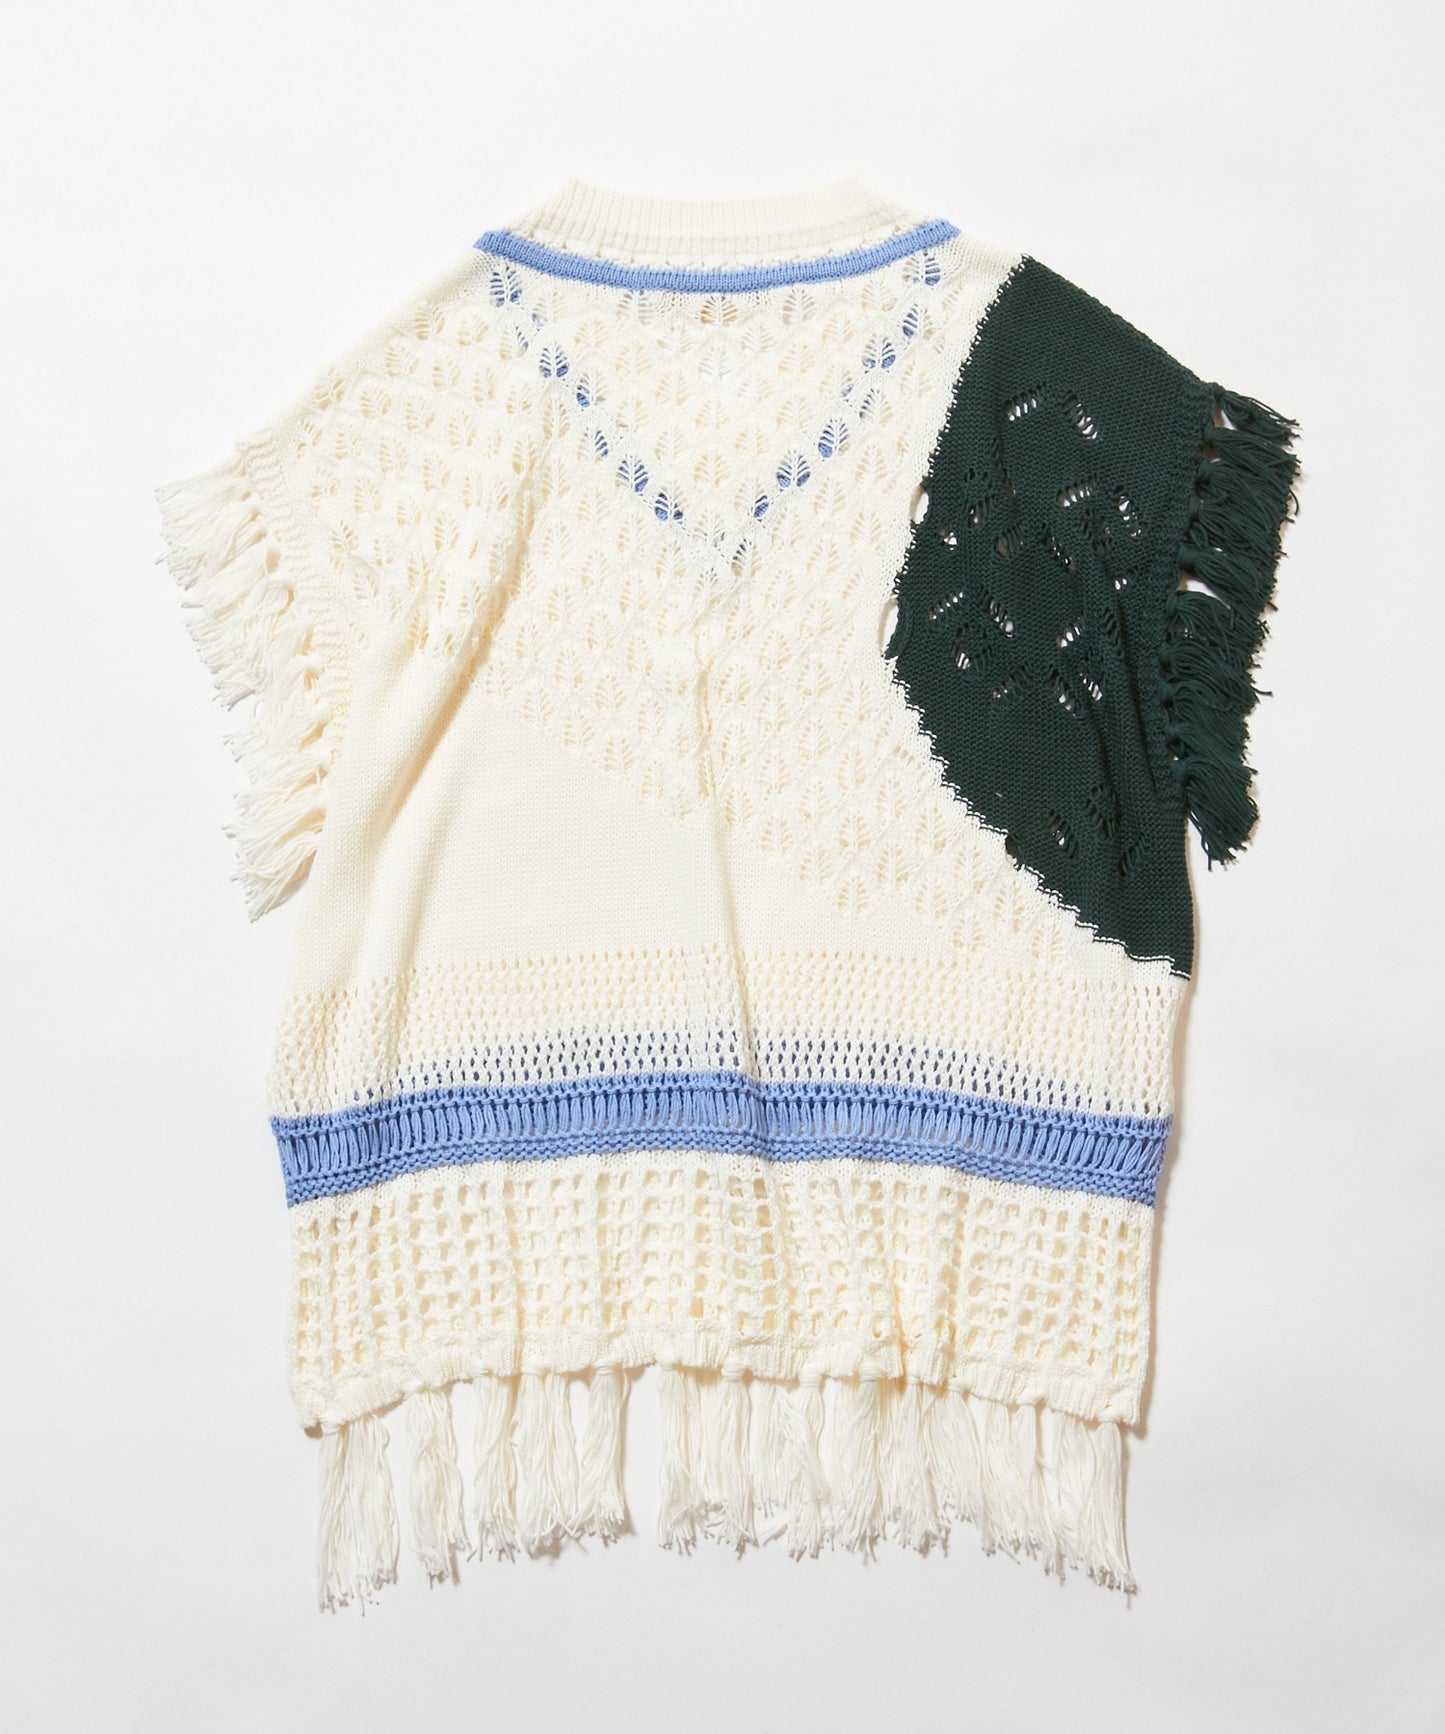 meagratia "SUNRISE SHADOWS" knit vest